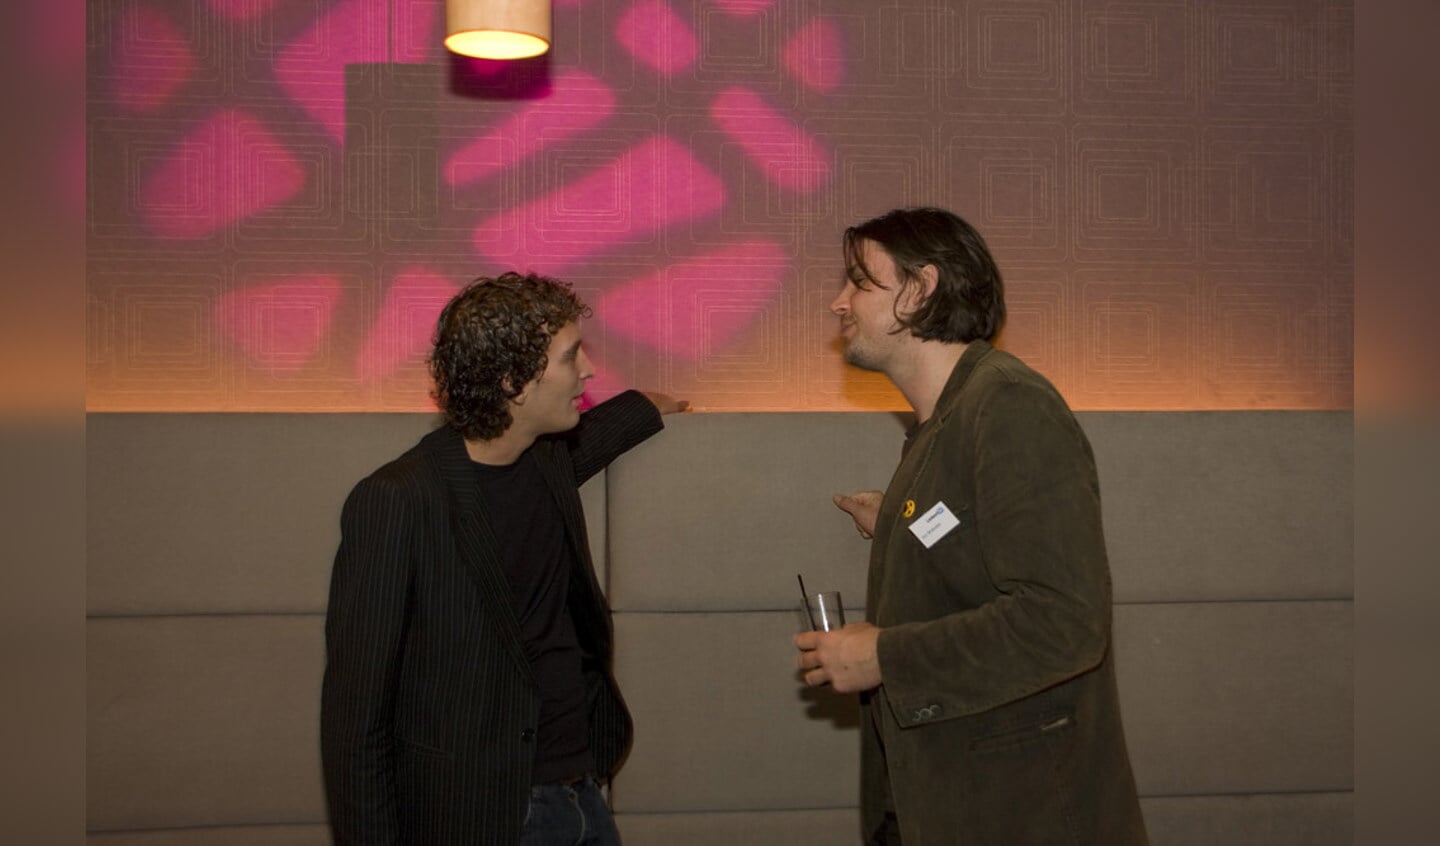 Netwerken tijdens de vierde LinkedIn-meeting in Breda. foto Jorgen Janssens